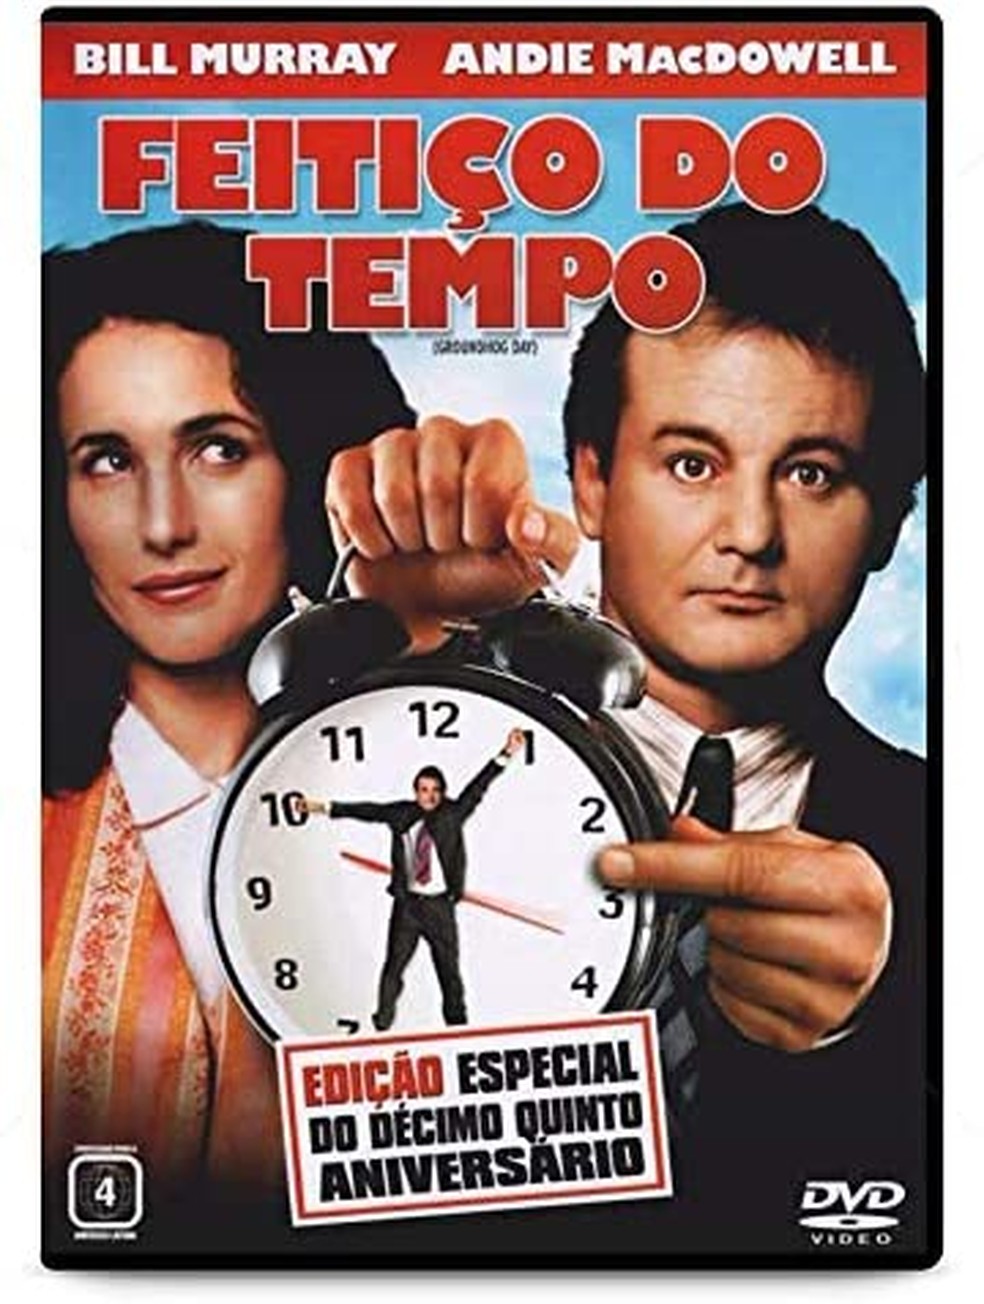 "Feitiço do tempo", filme de 1993 — Foto: Reprodução